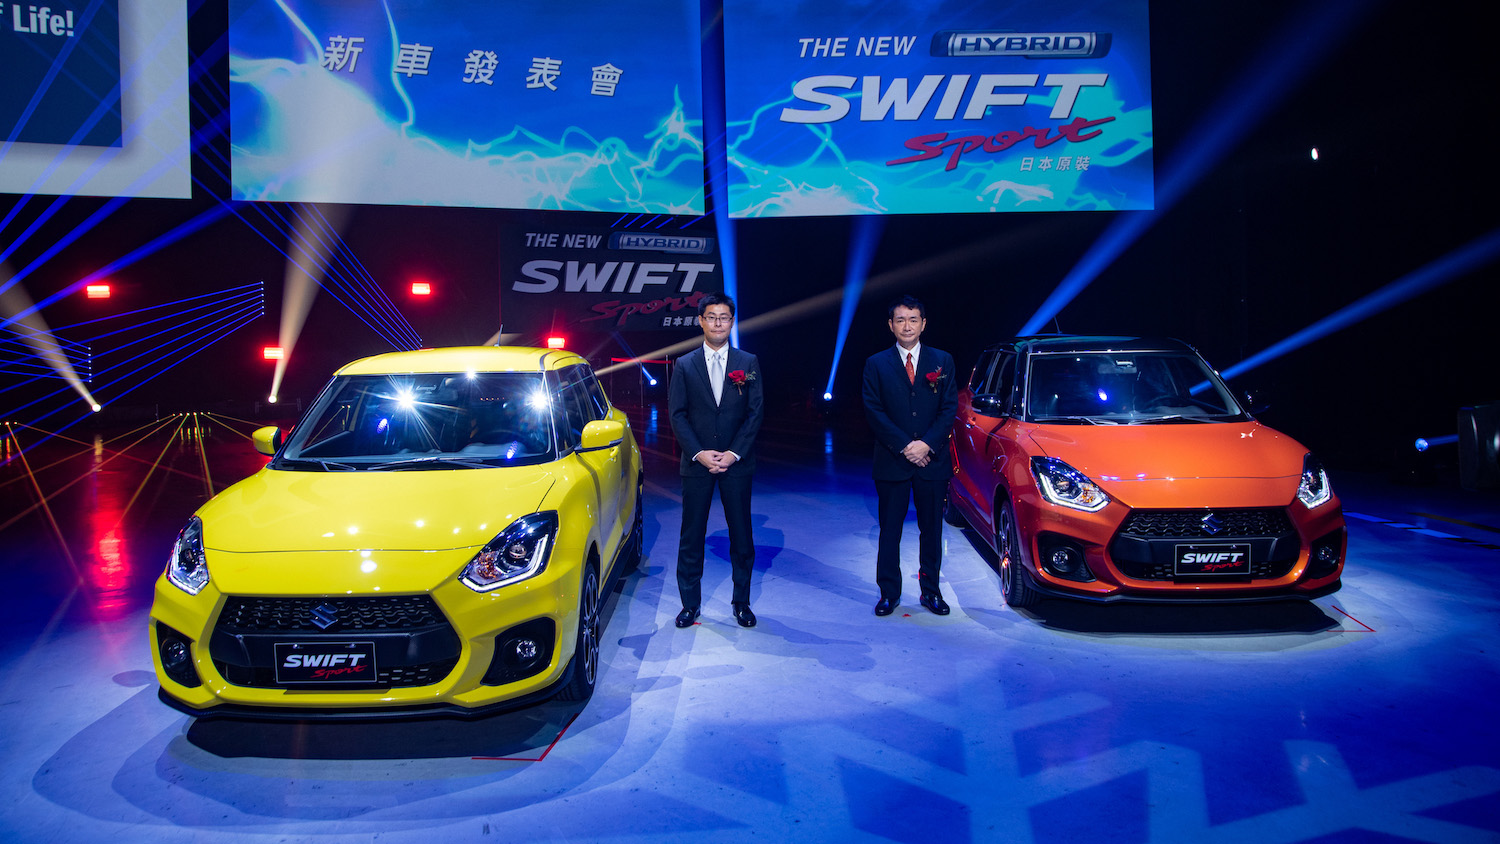 輕油電 Suzuki Swift 70 萬起開賣 Swift Sport 80 萬起獻給熱血操控派